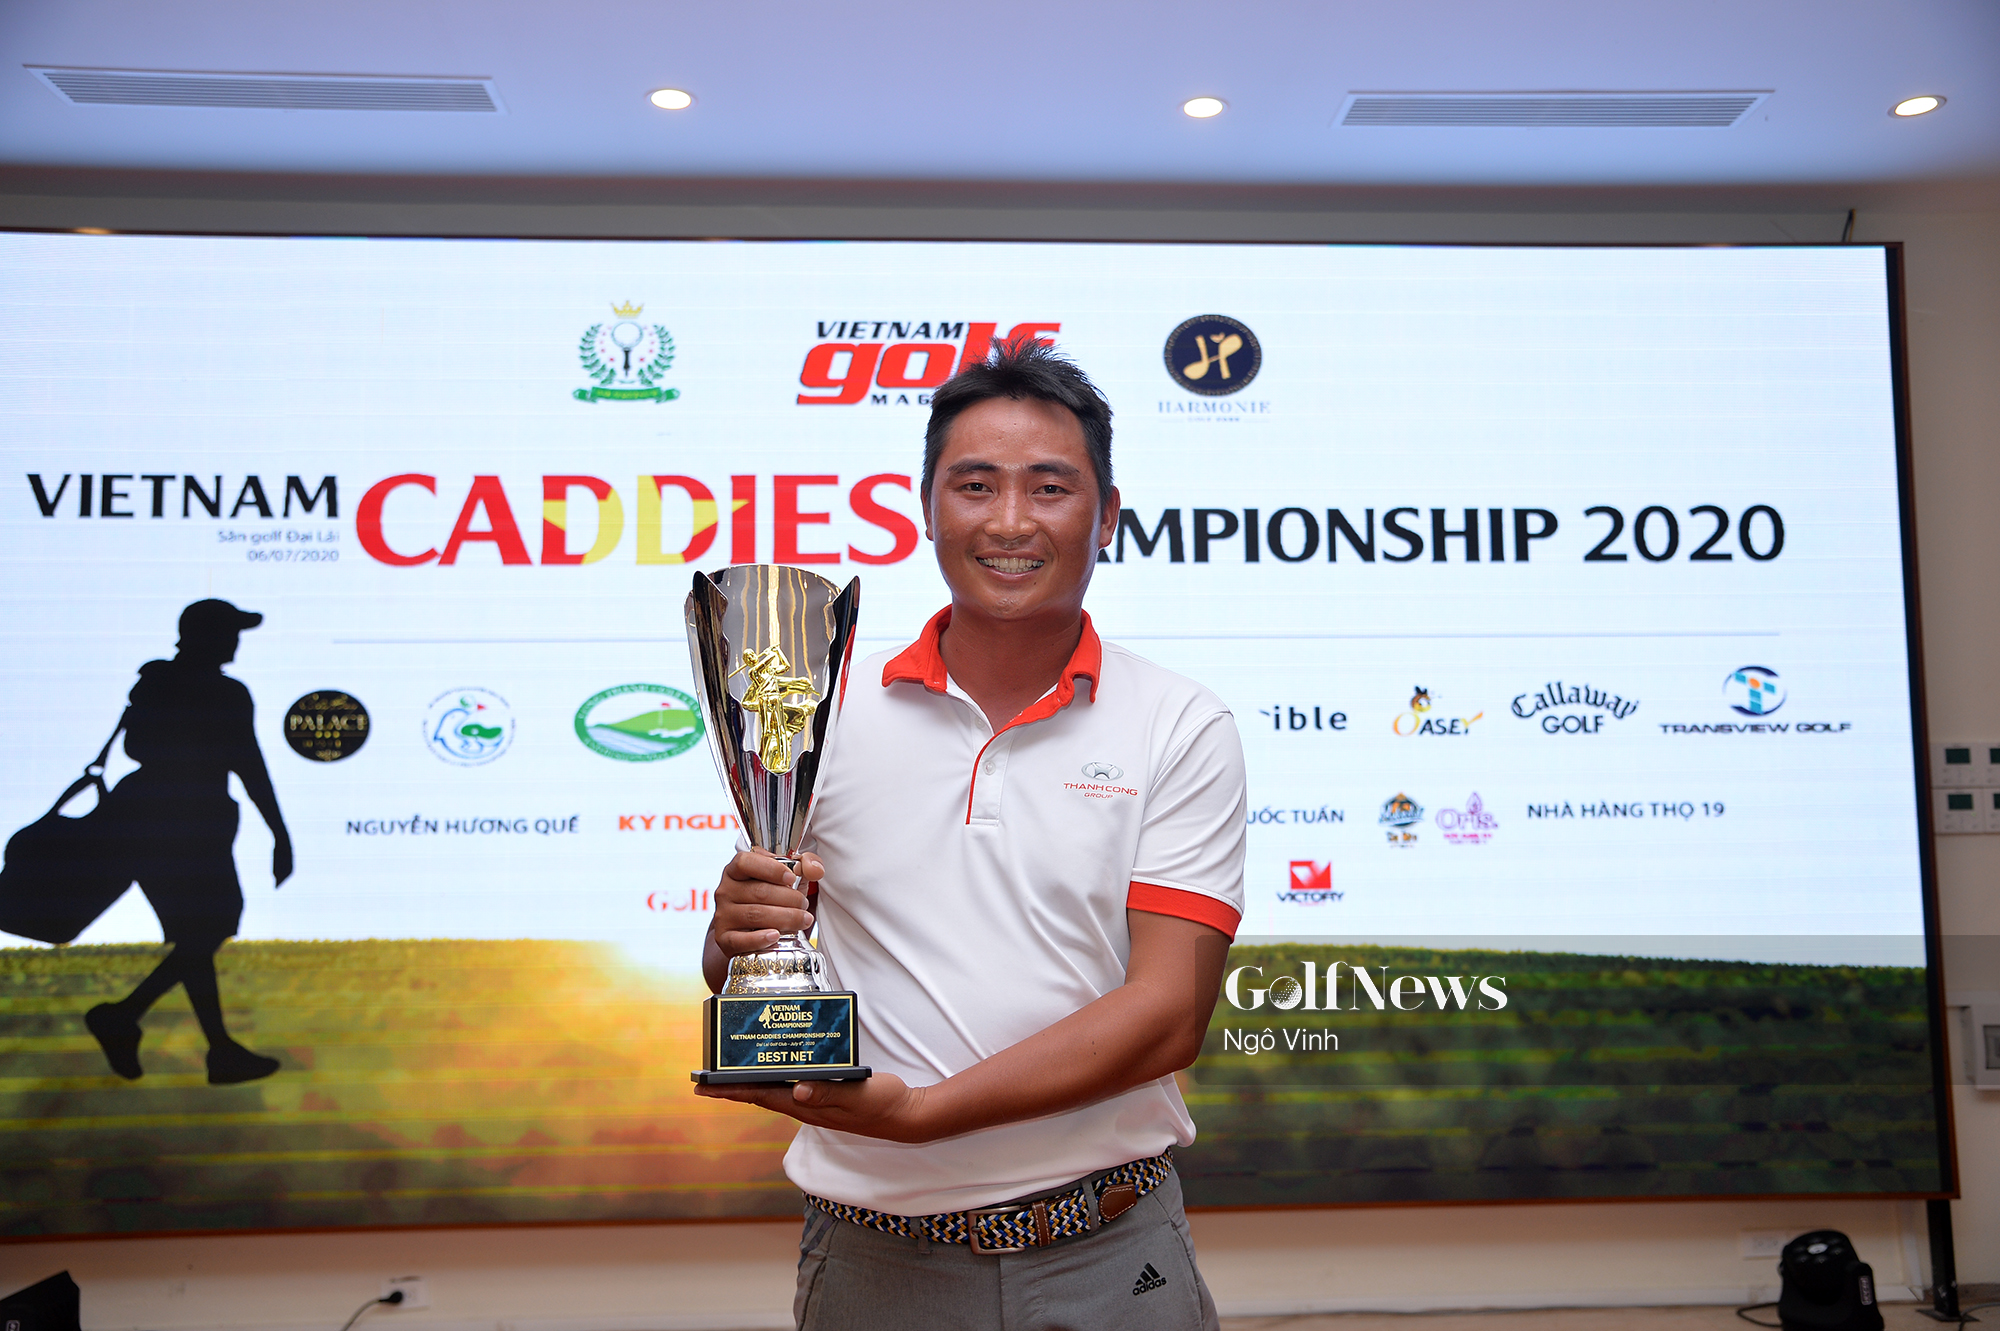 Phạm Đăng Huấn vô địch Viet Nam Caddies Championship 2020 - Khu vực miền Bắc